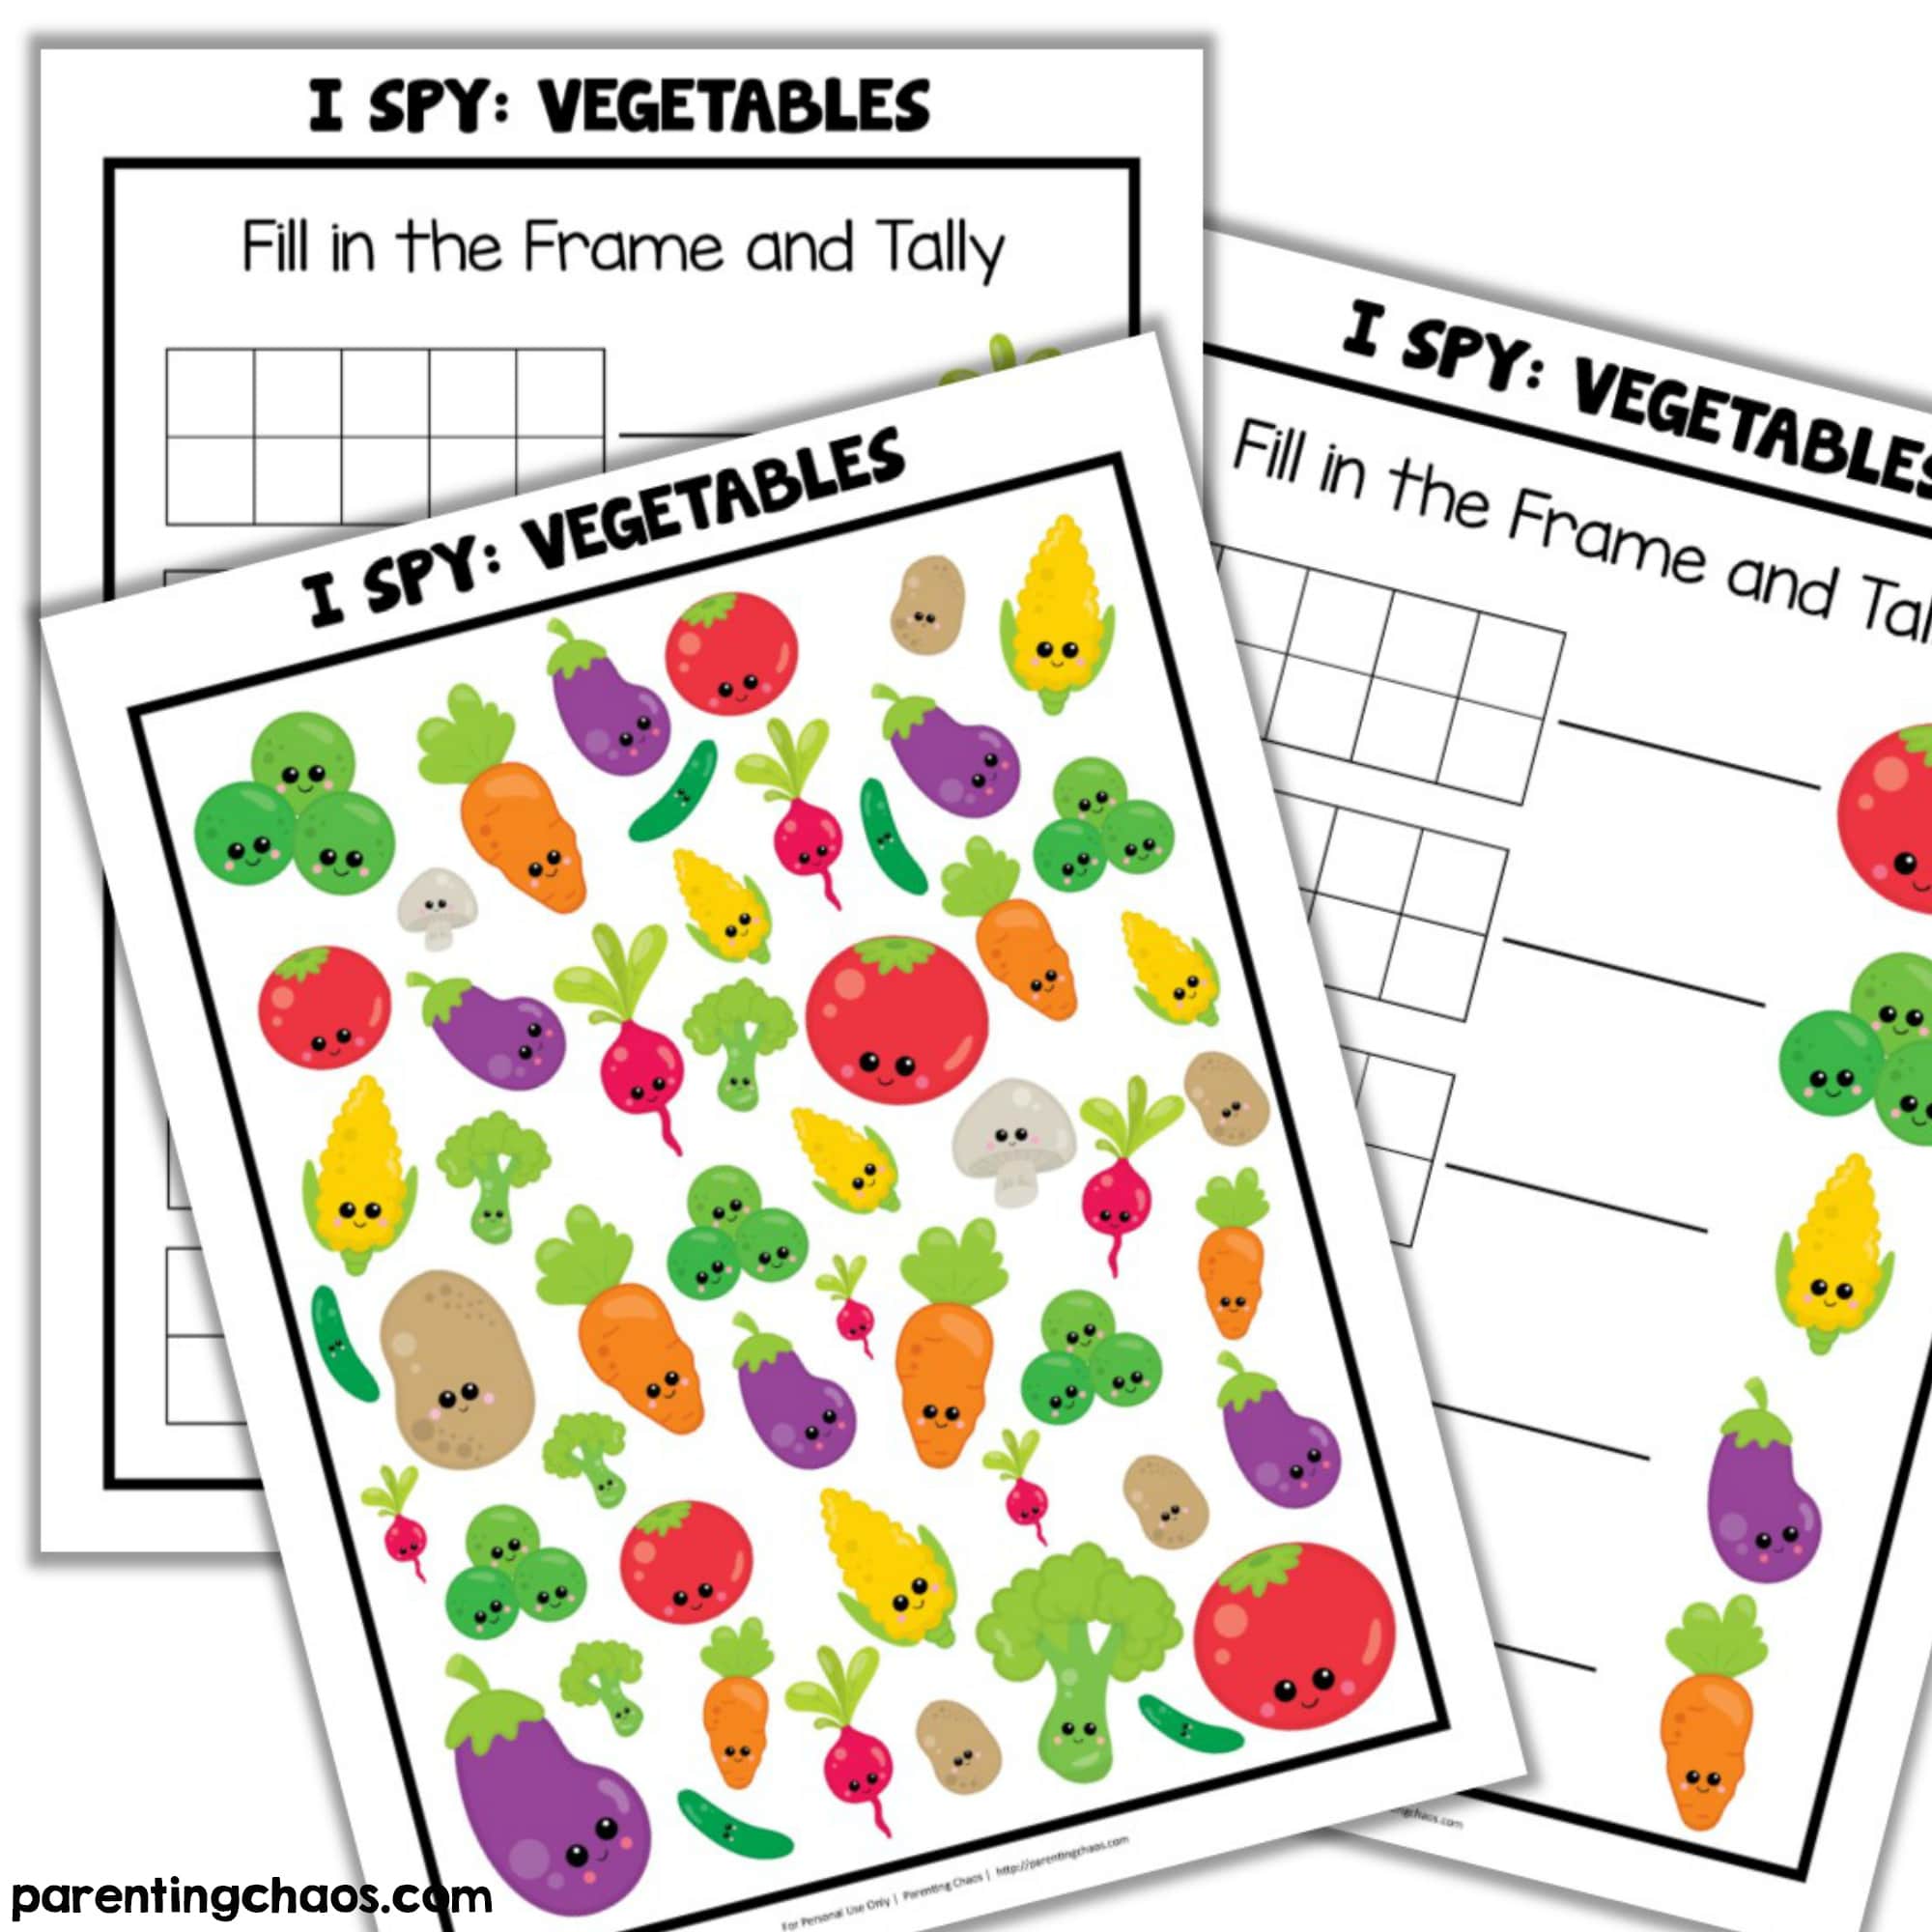 Vegetable I Spy Printable Game